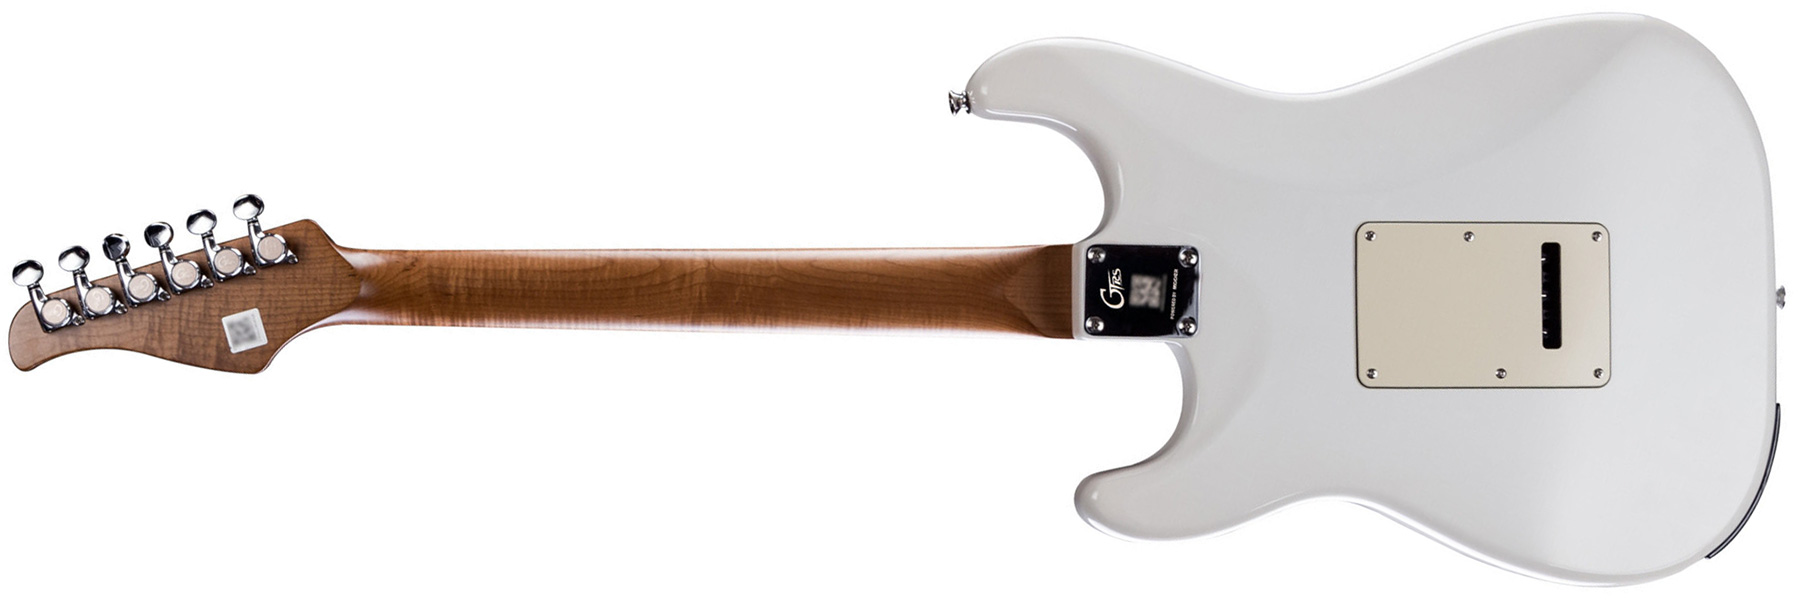 Mooer Gtrs P800 Pro Intelligent Guitar Hss Trem Rw - Olympic White - Midi-/Digital-/Modeling Gitarren - Variation 1